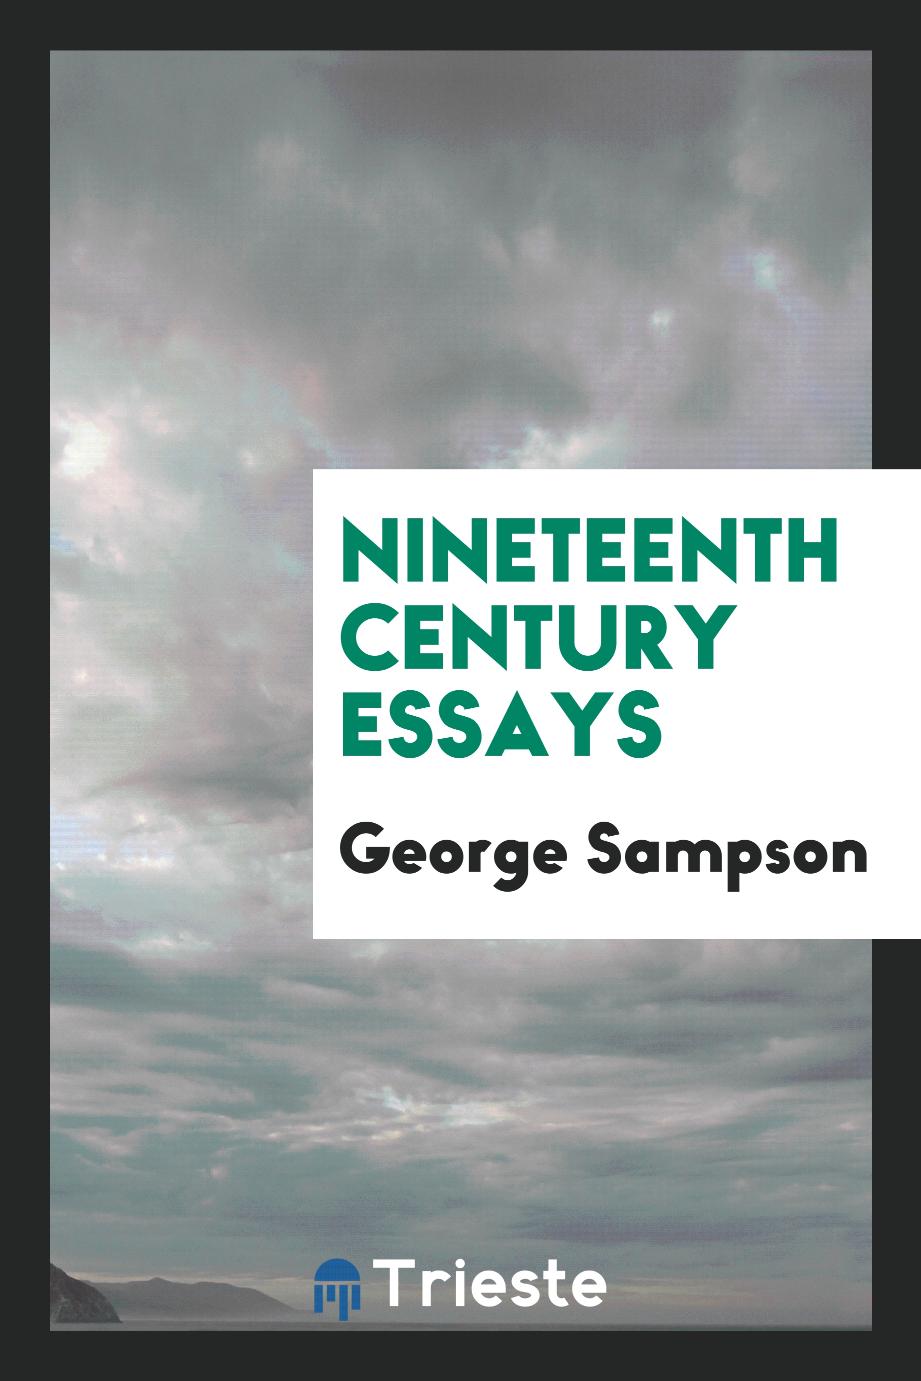 Nineteenth century essays